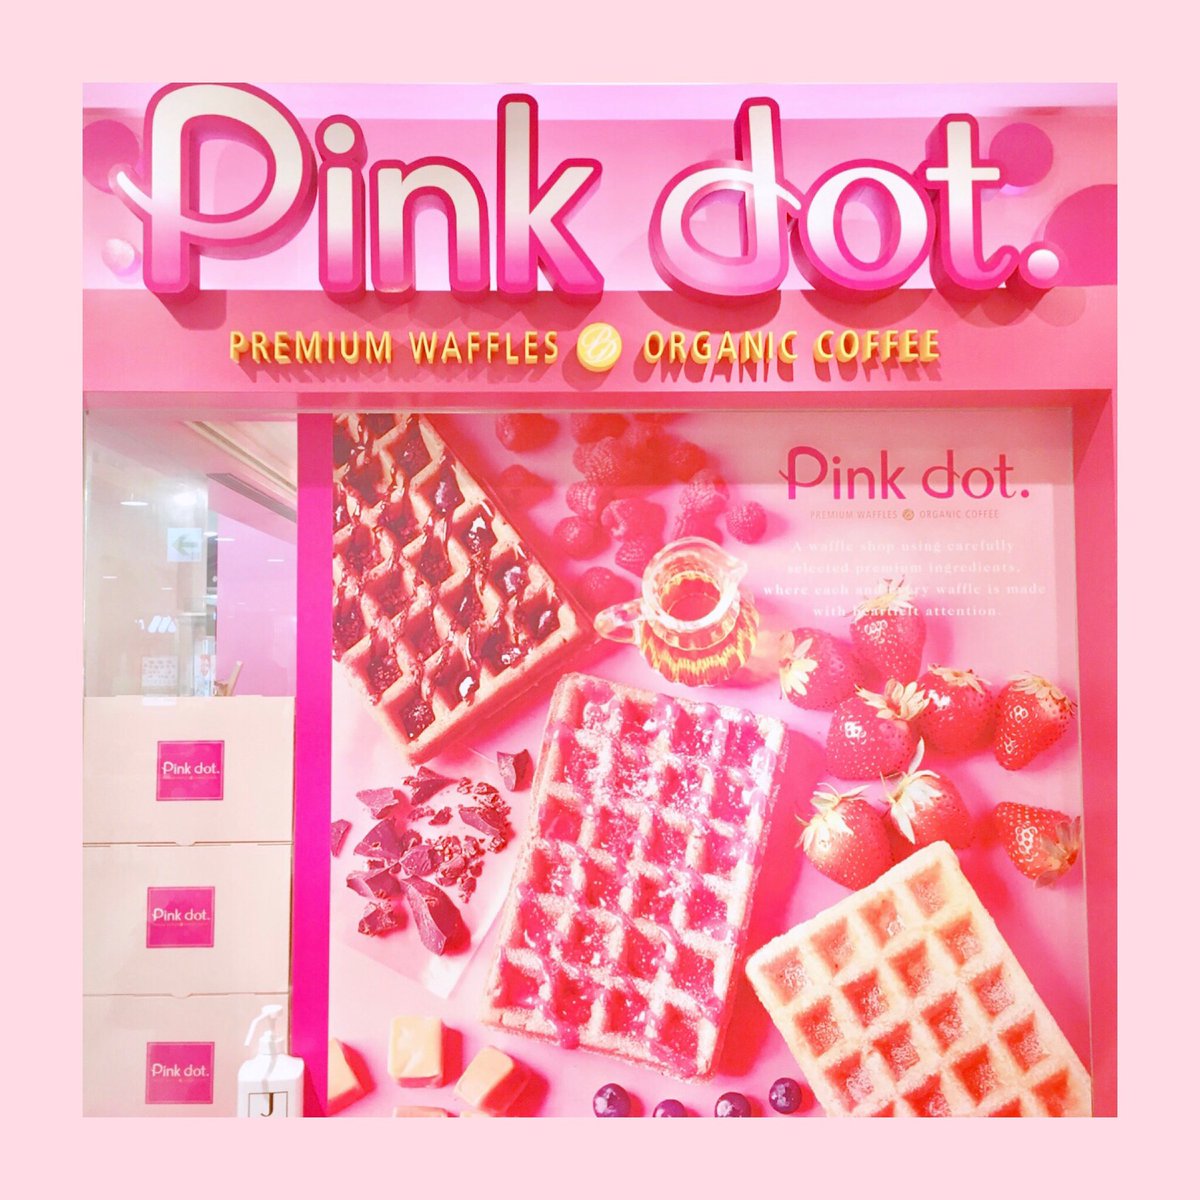 ট ইট র Pink Lush 東京タワーにあるピンクのワッフル屋さん Pinkdot ピンクドット ワッフル Waffles 東京タワー Tokyotower Coffee 東京 Tokyo ピンクスポット 可愛いお店 Sweets Pinkpinkpink ピンク Pink Pinklush T Co